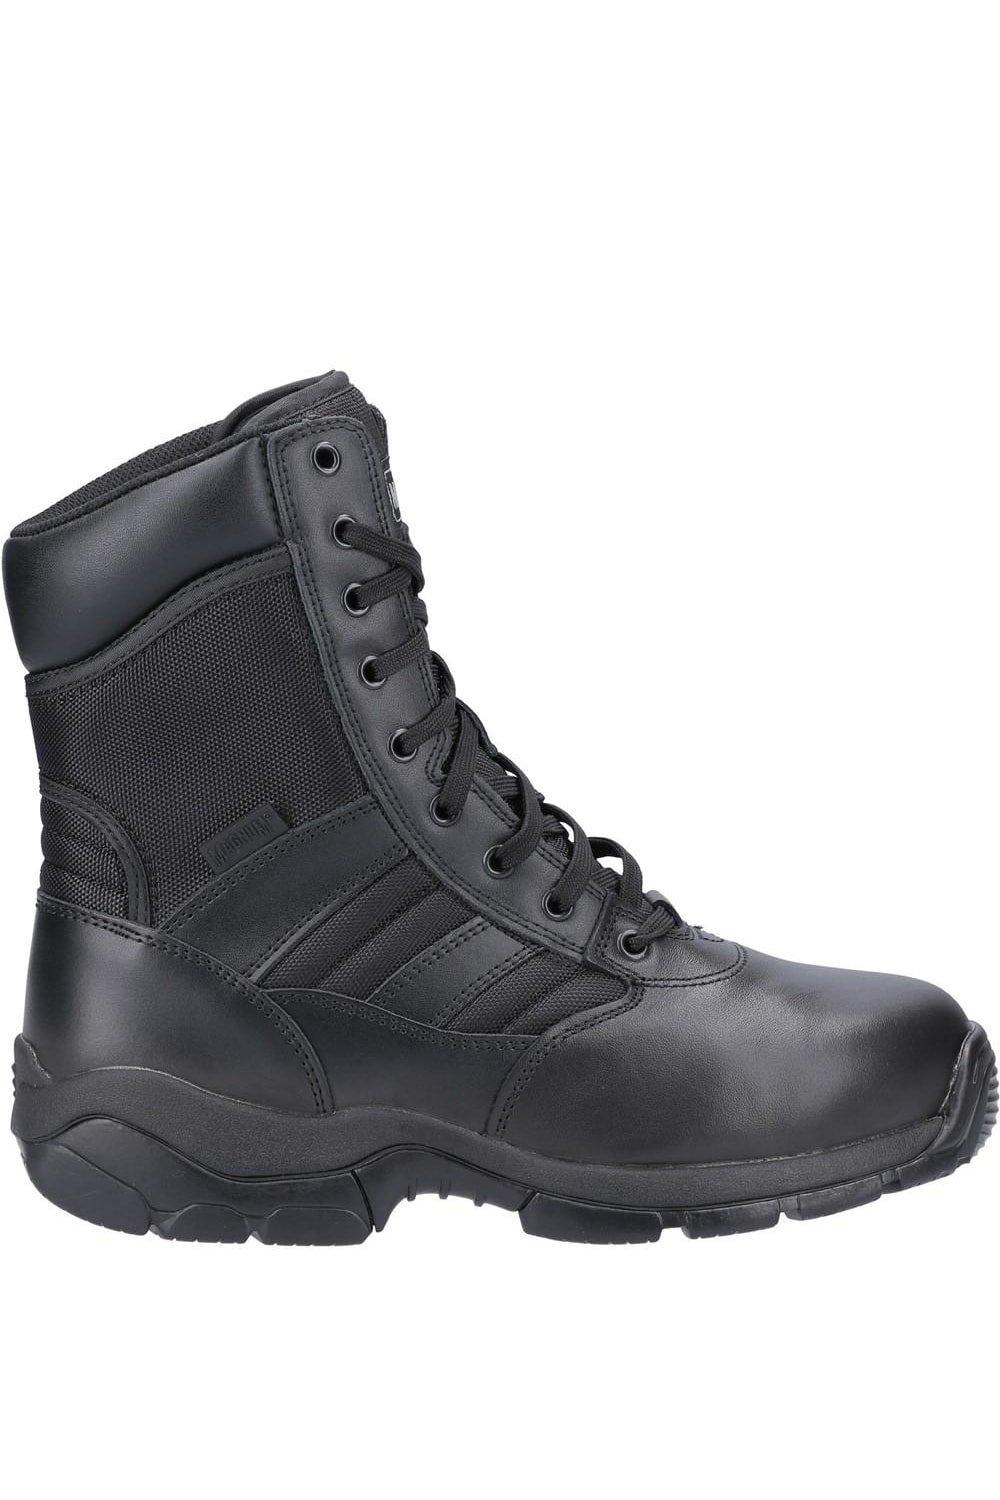 Кожаные защитные ботинки Panther 8.0 со стальным носком Magnum, черный мужские нескользящие кроссовки легкие дышащие защитные рабочие ботинки со стальным носком сетчатые защитные ботинки новинка 2022